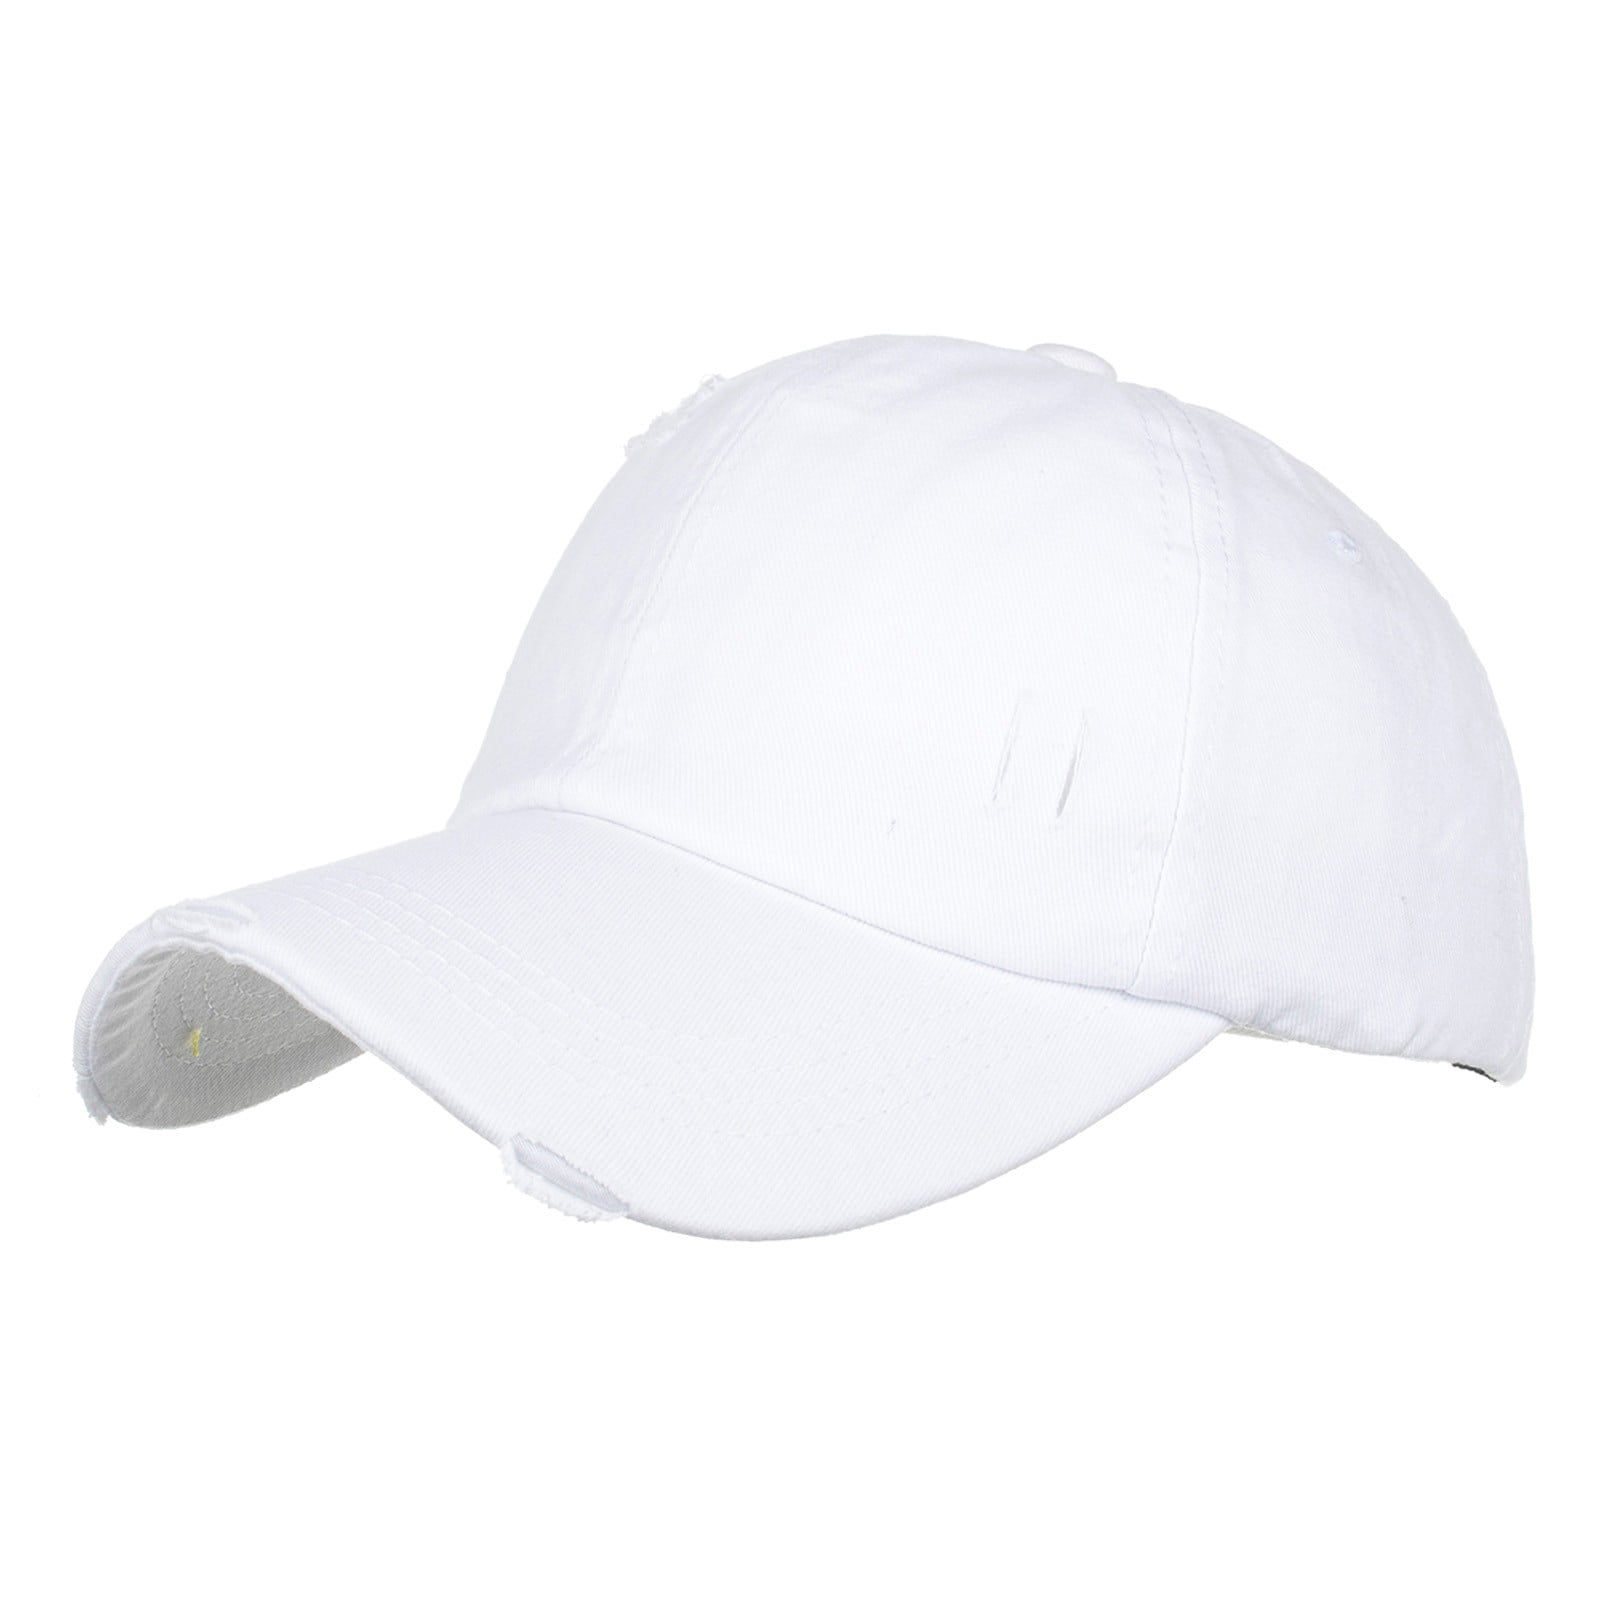 Men Man Hat Hat Hat Women Visor Women JDEFEG Fashion Baseball Baseball Men Sun Beach Bun Caps Bucket Cap White Hop Visor Hats Breathable for